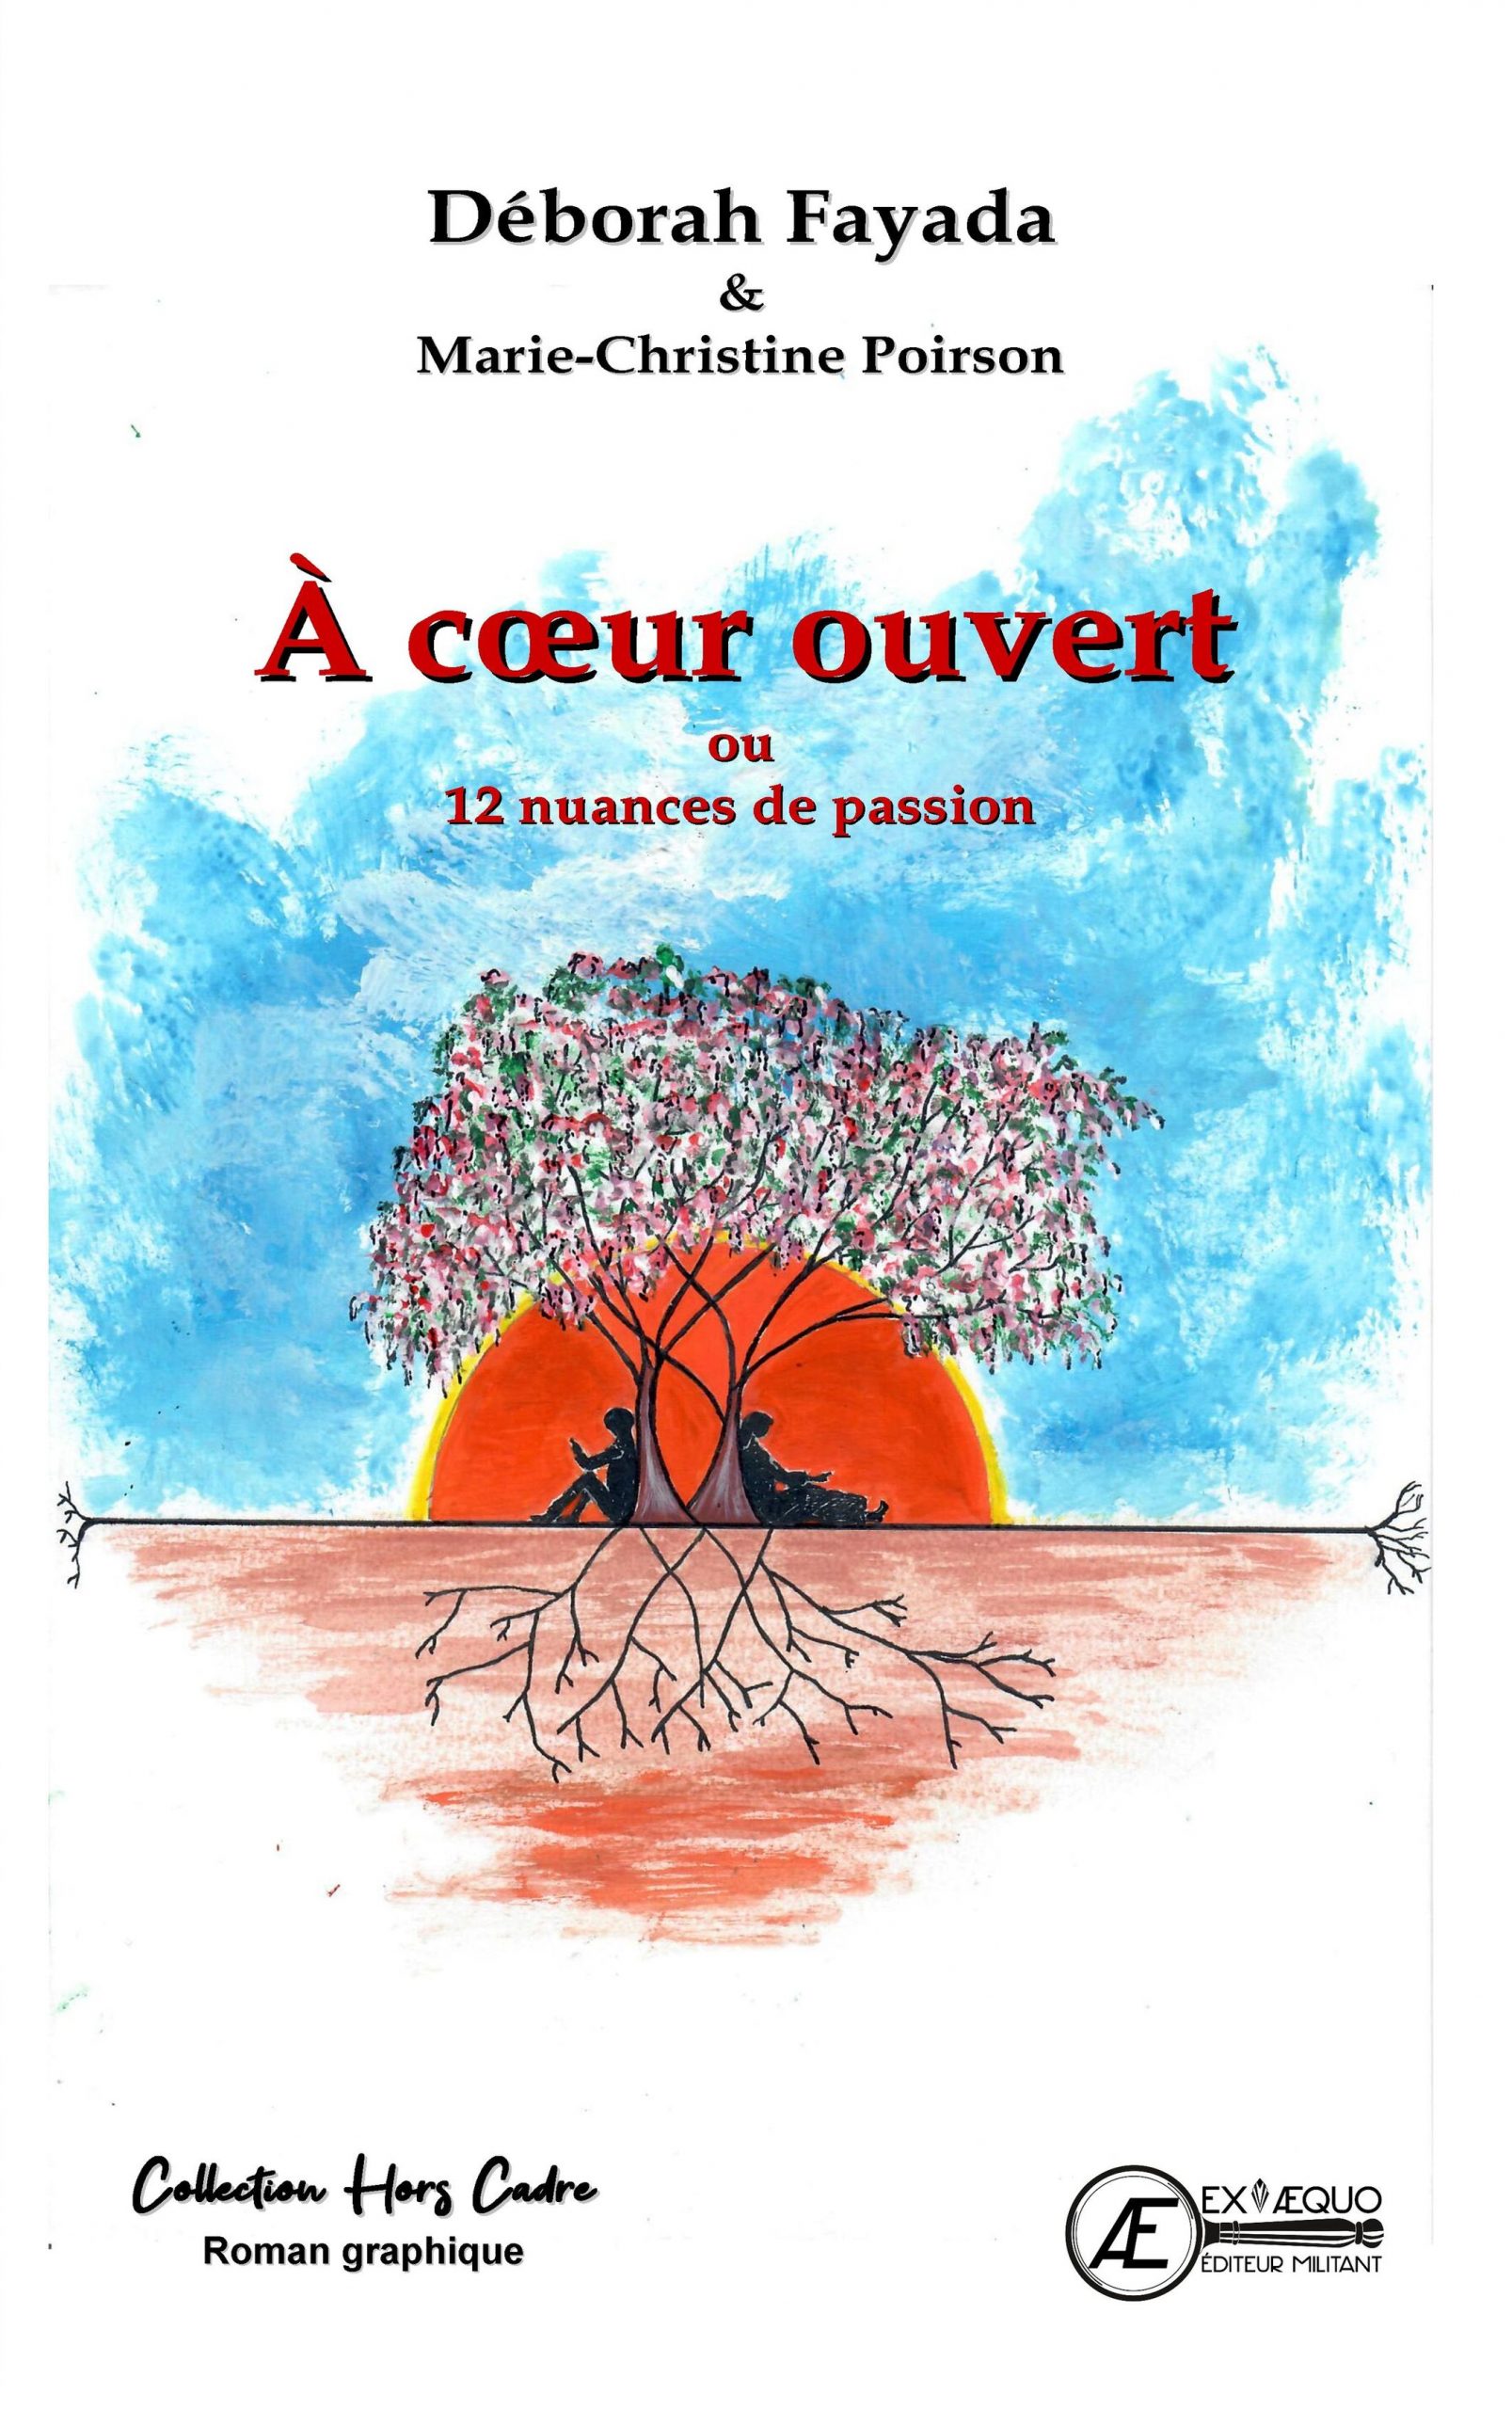 You are currently viewing À cœur ouvert, de Deborah Fayada & Marie-Christine Poirson